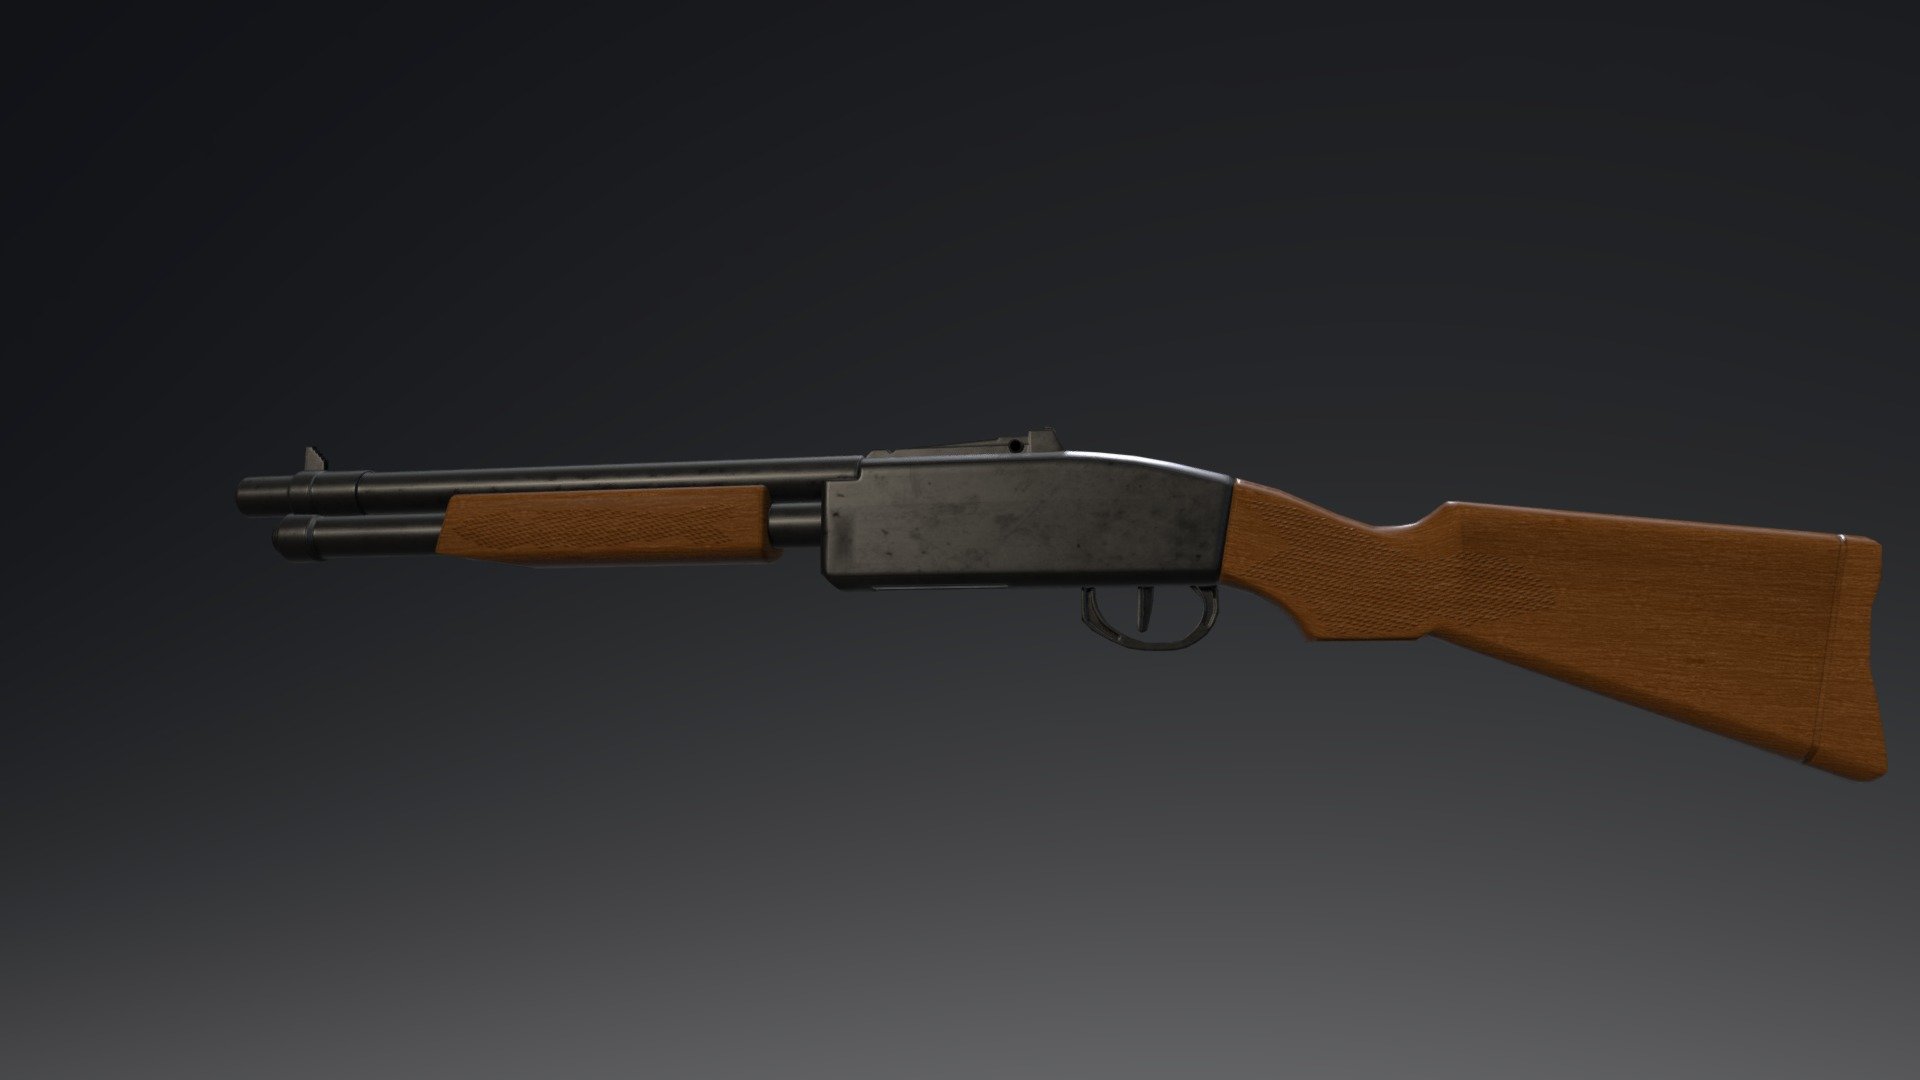 Tootsietoy Dakota DOOM Shotgun - 3D model by JasperCarmack - Sketchfab